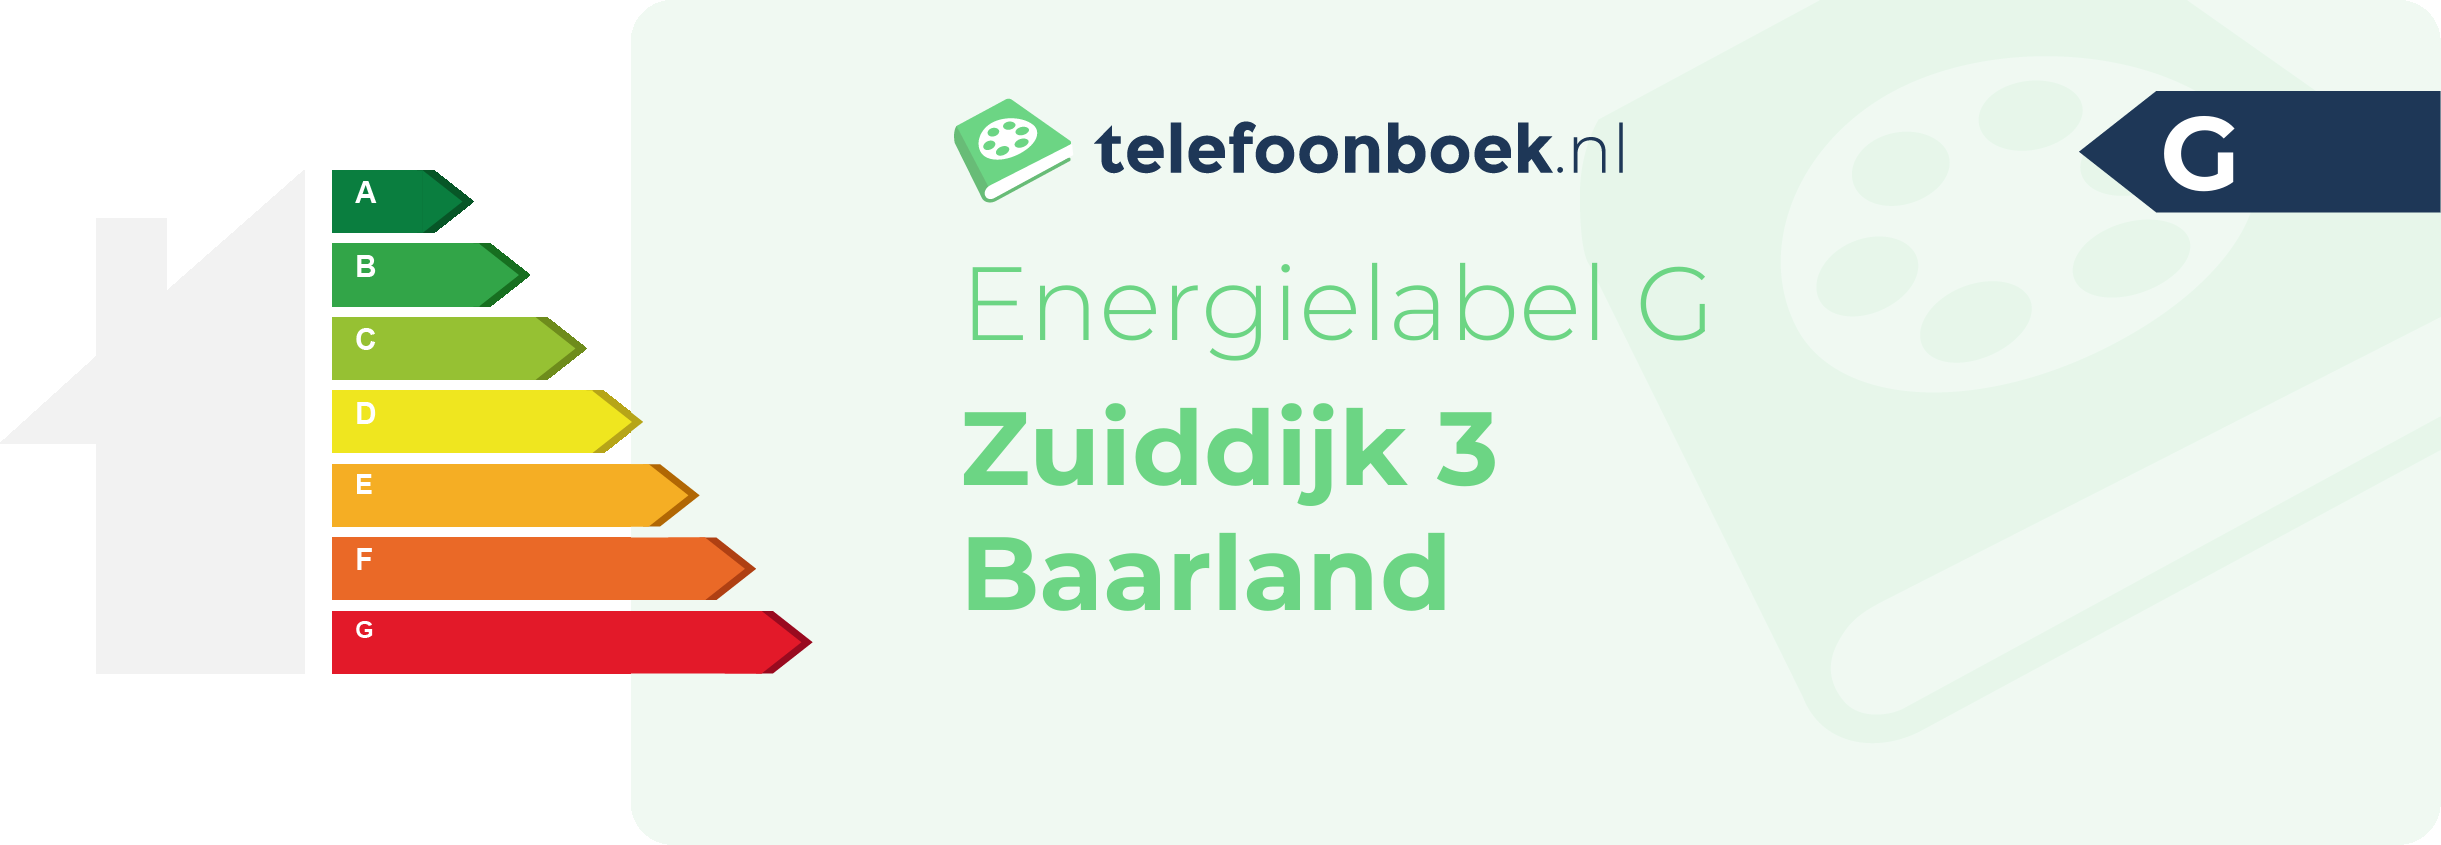 Energielabel Zuiddijk 3 Baarland